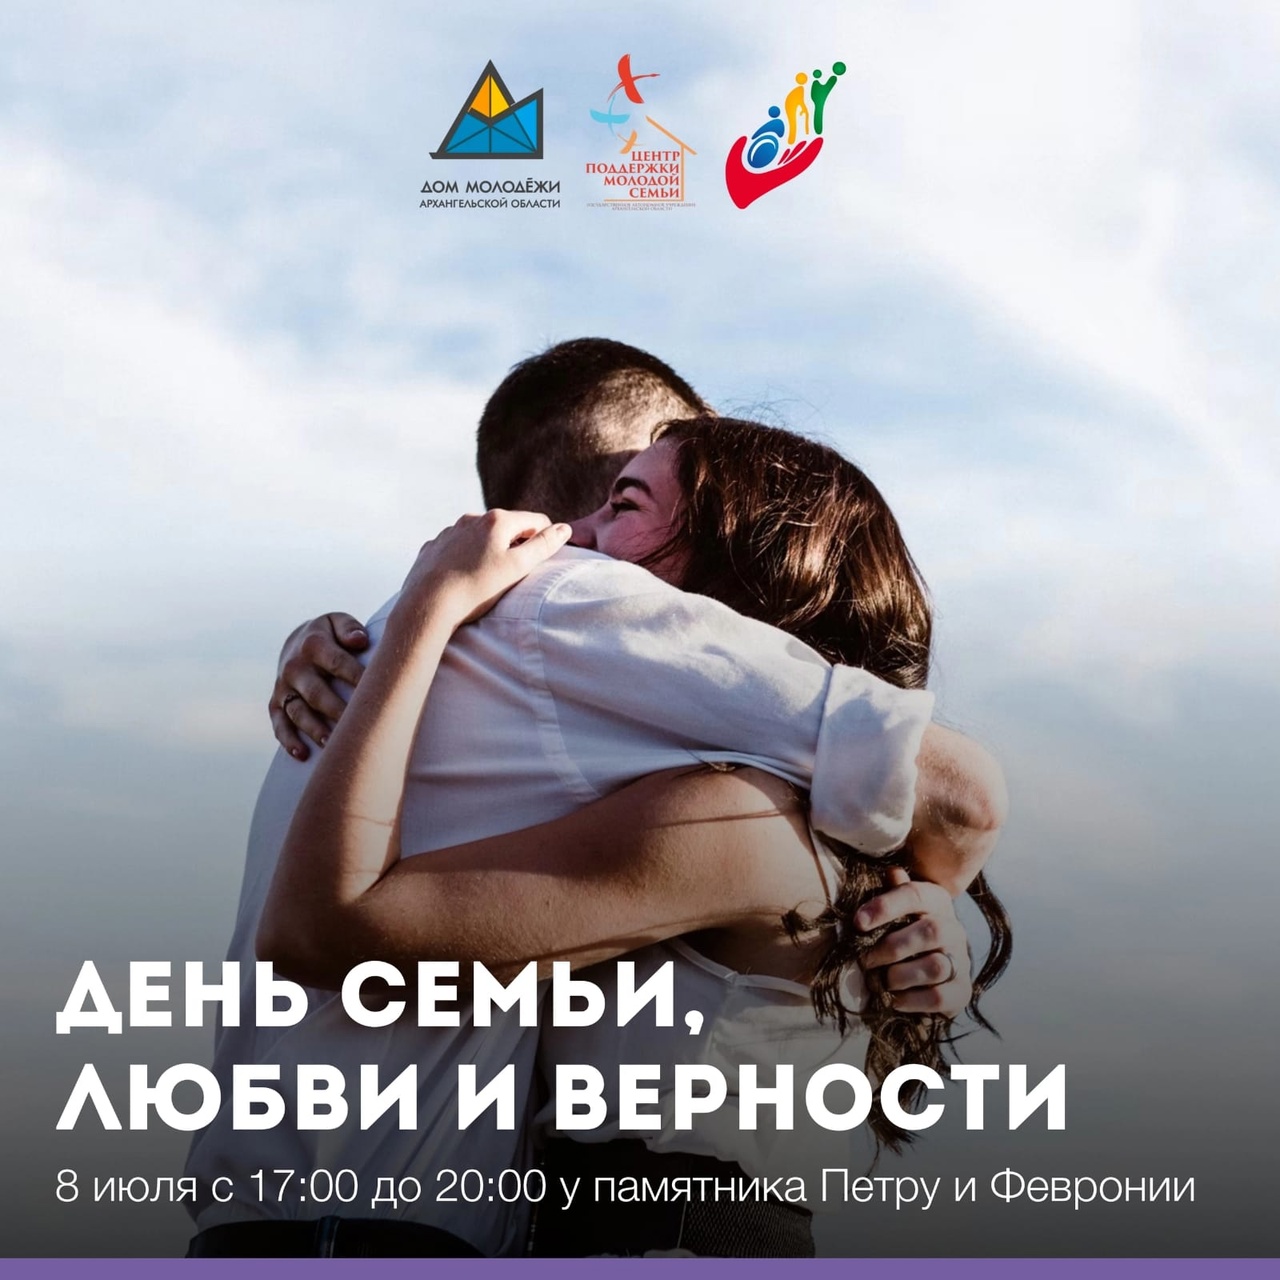 В День семьи, любви и верности в Архангельске пройдет акция "Все начинается с любви"